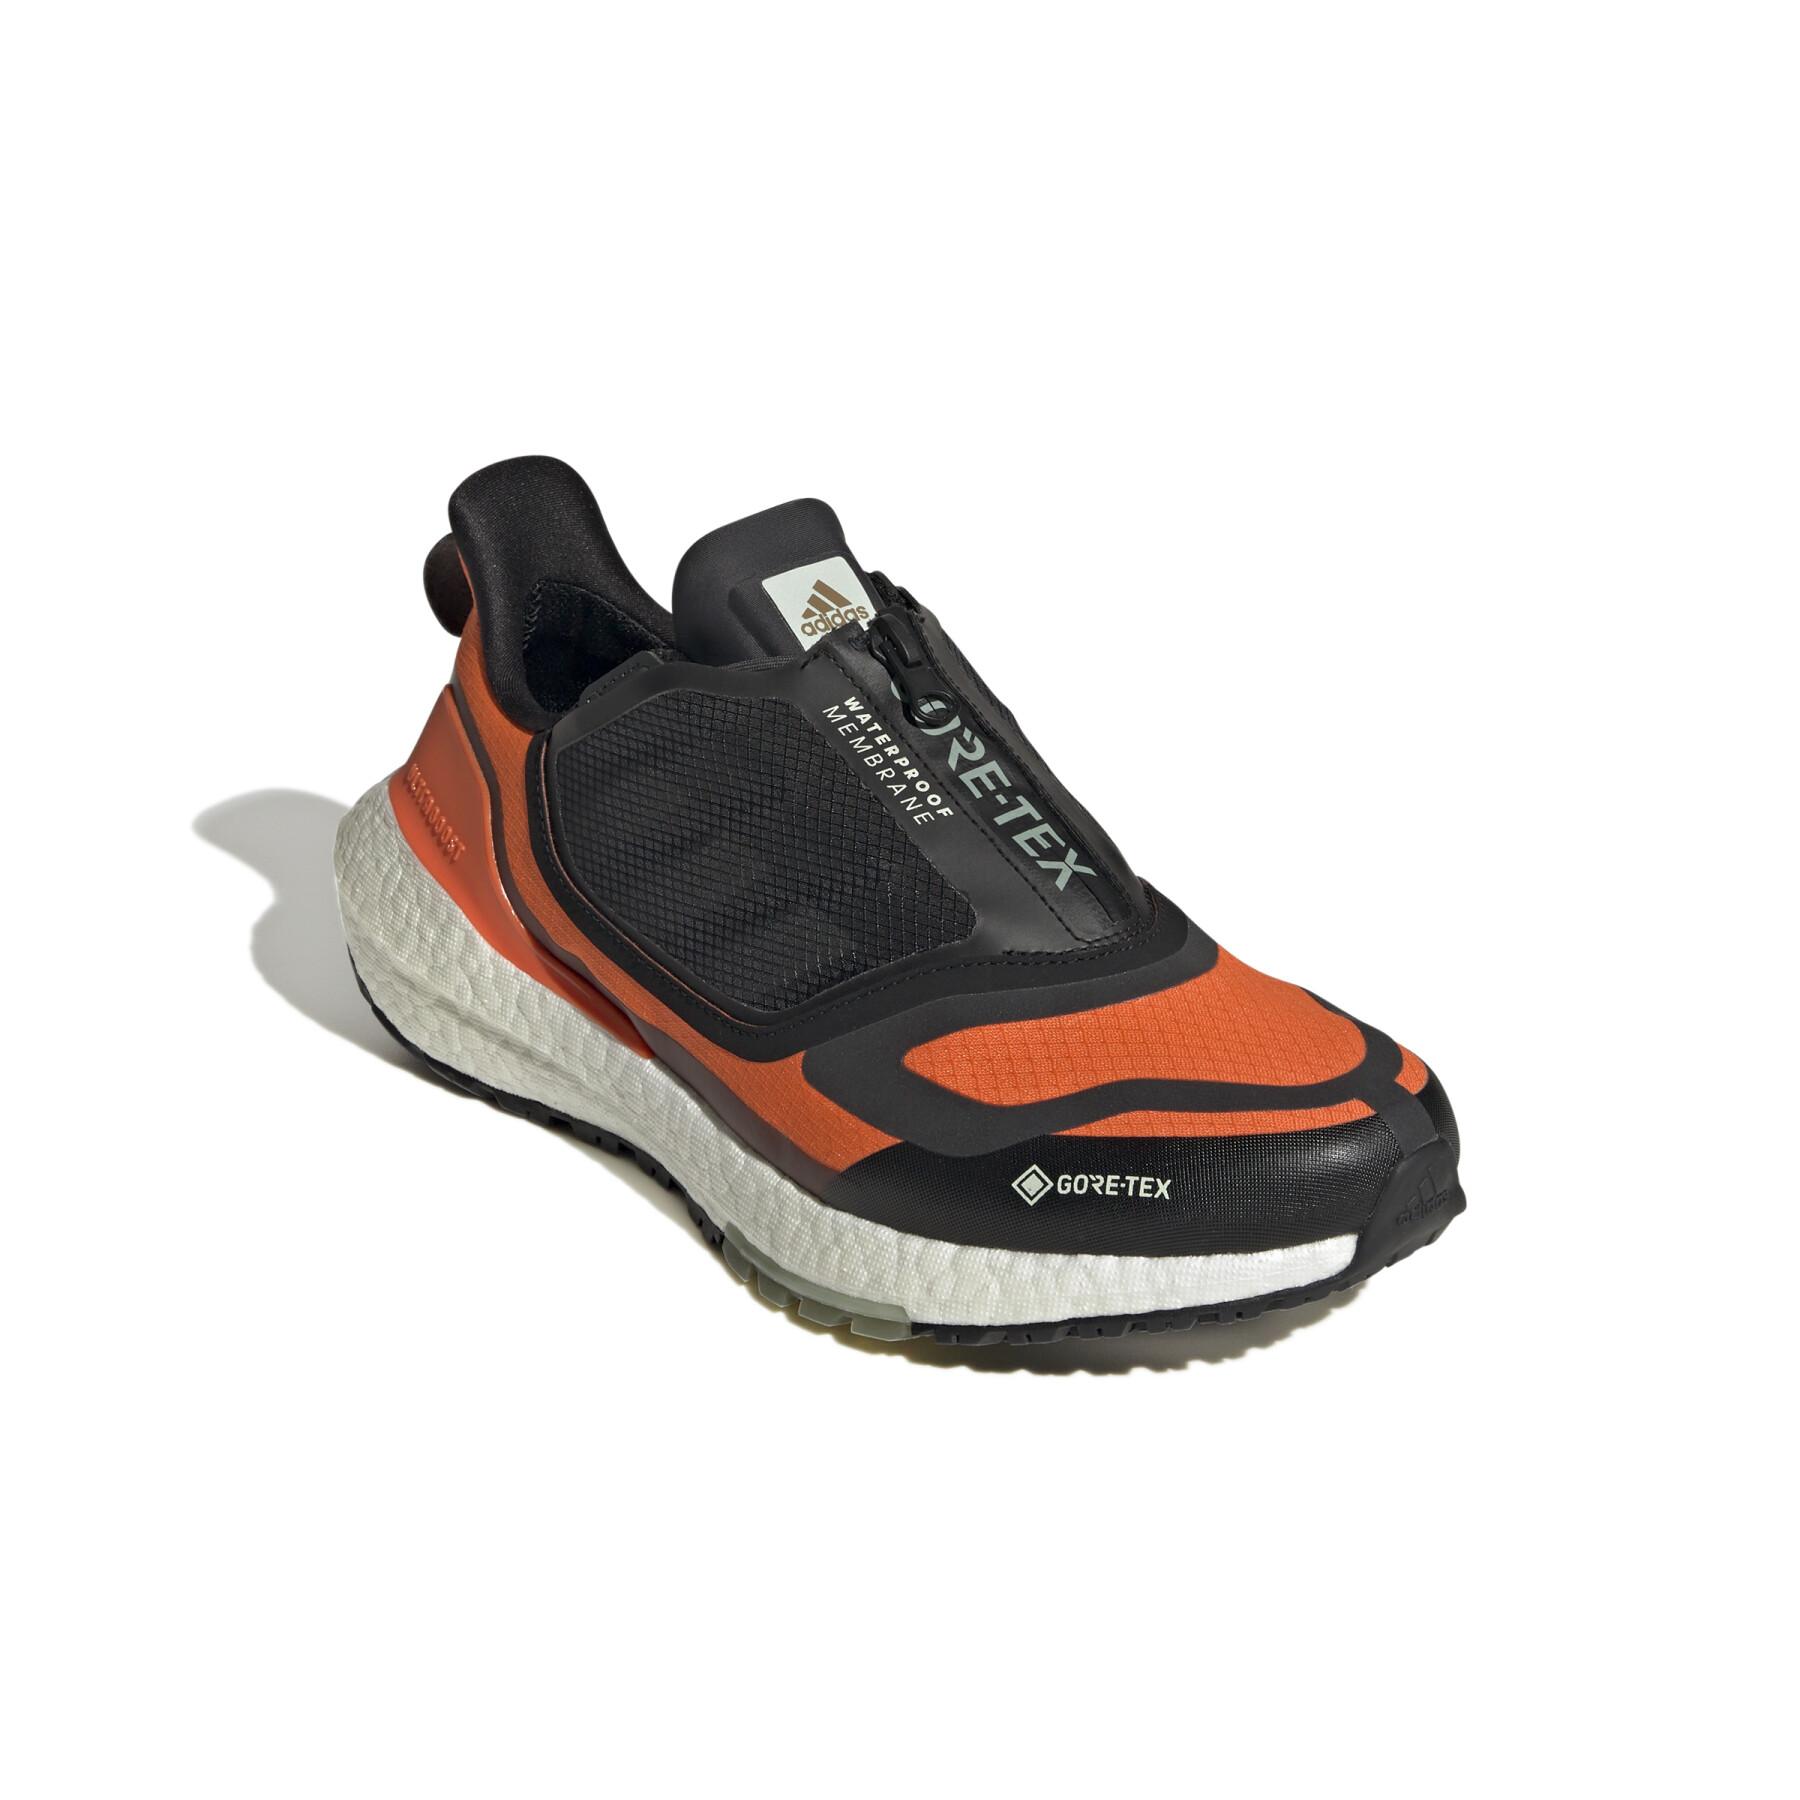 Running shoes adidas Ultraboost 22 Gtx